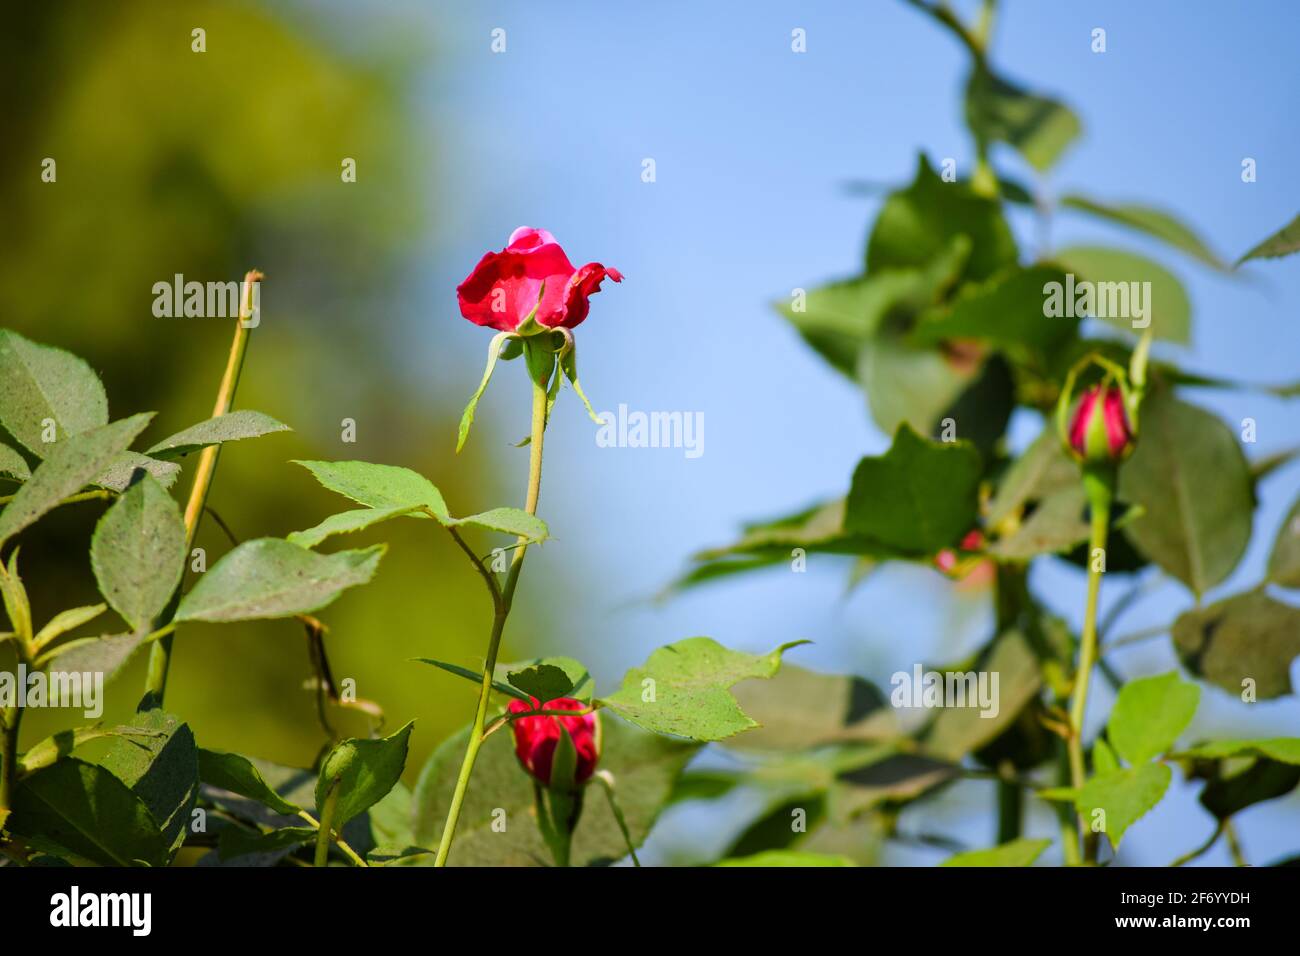 Kleine, rosarot gefärbte Blüten, die auf der Pflanze blühen, mit Knospen und blauem Himmel im Hintergrund, mit selektivem Fokus. Stockfoto